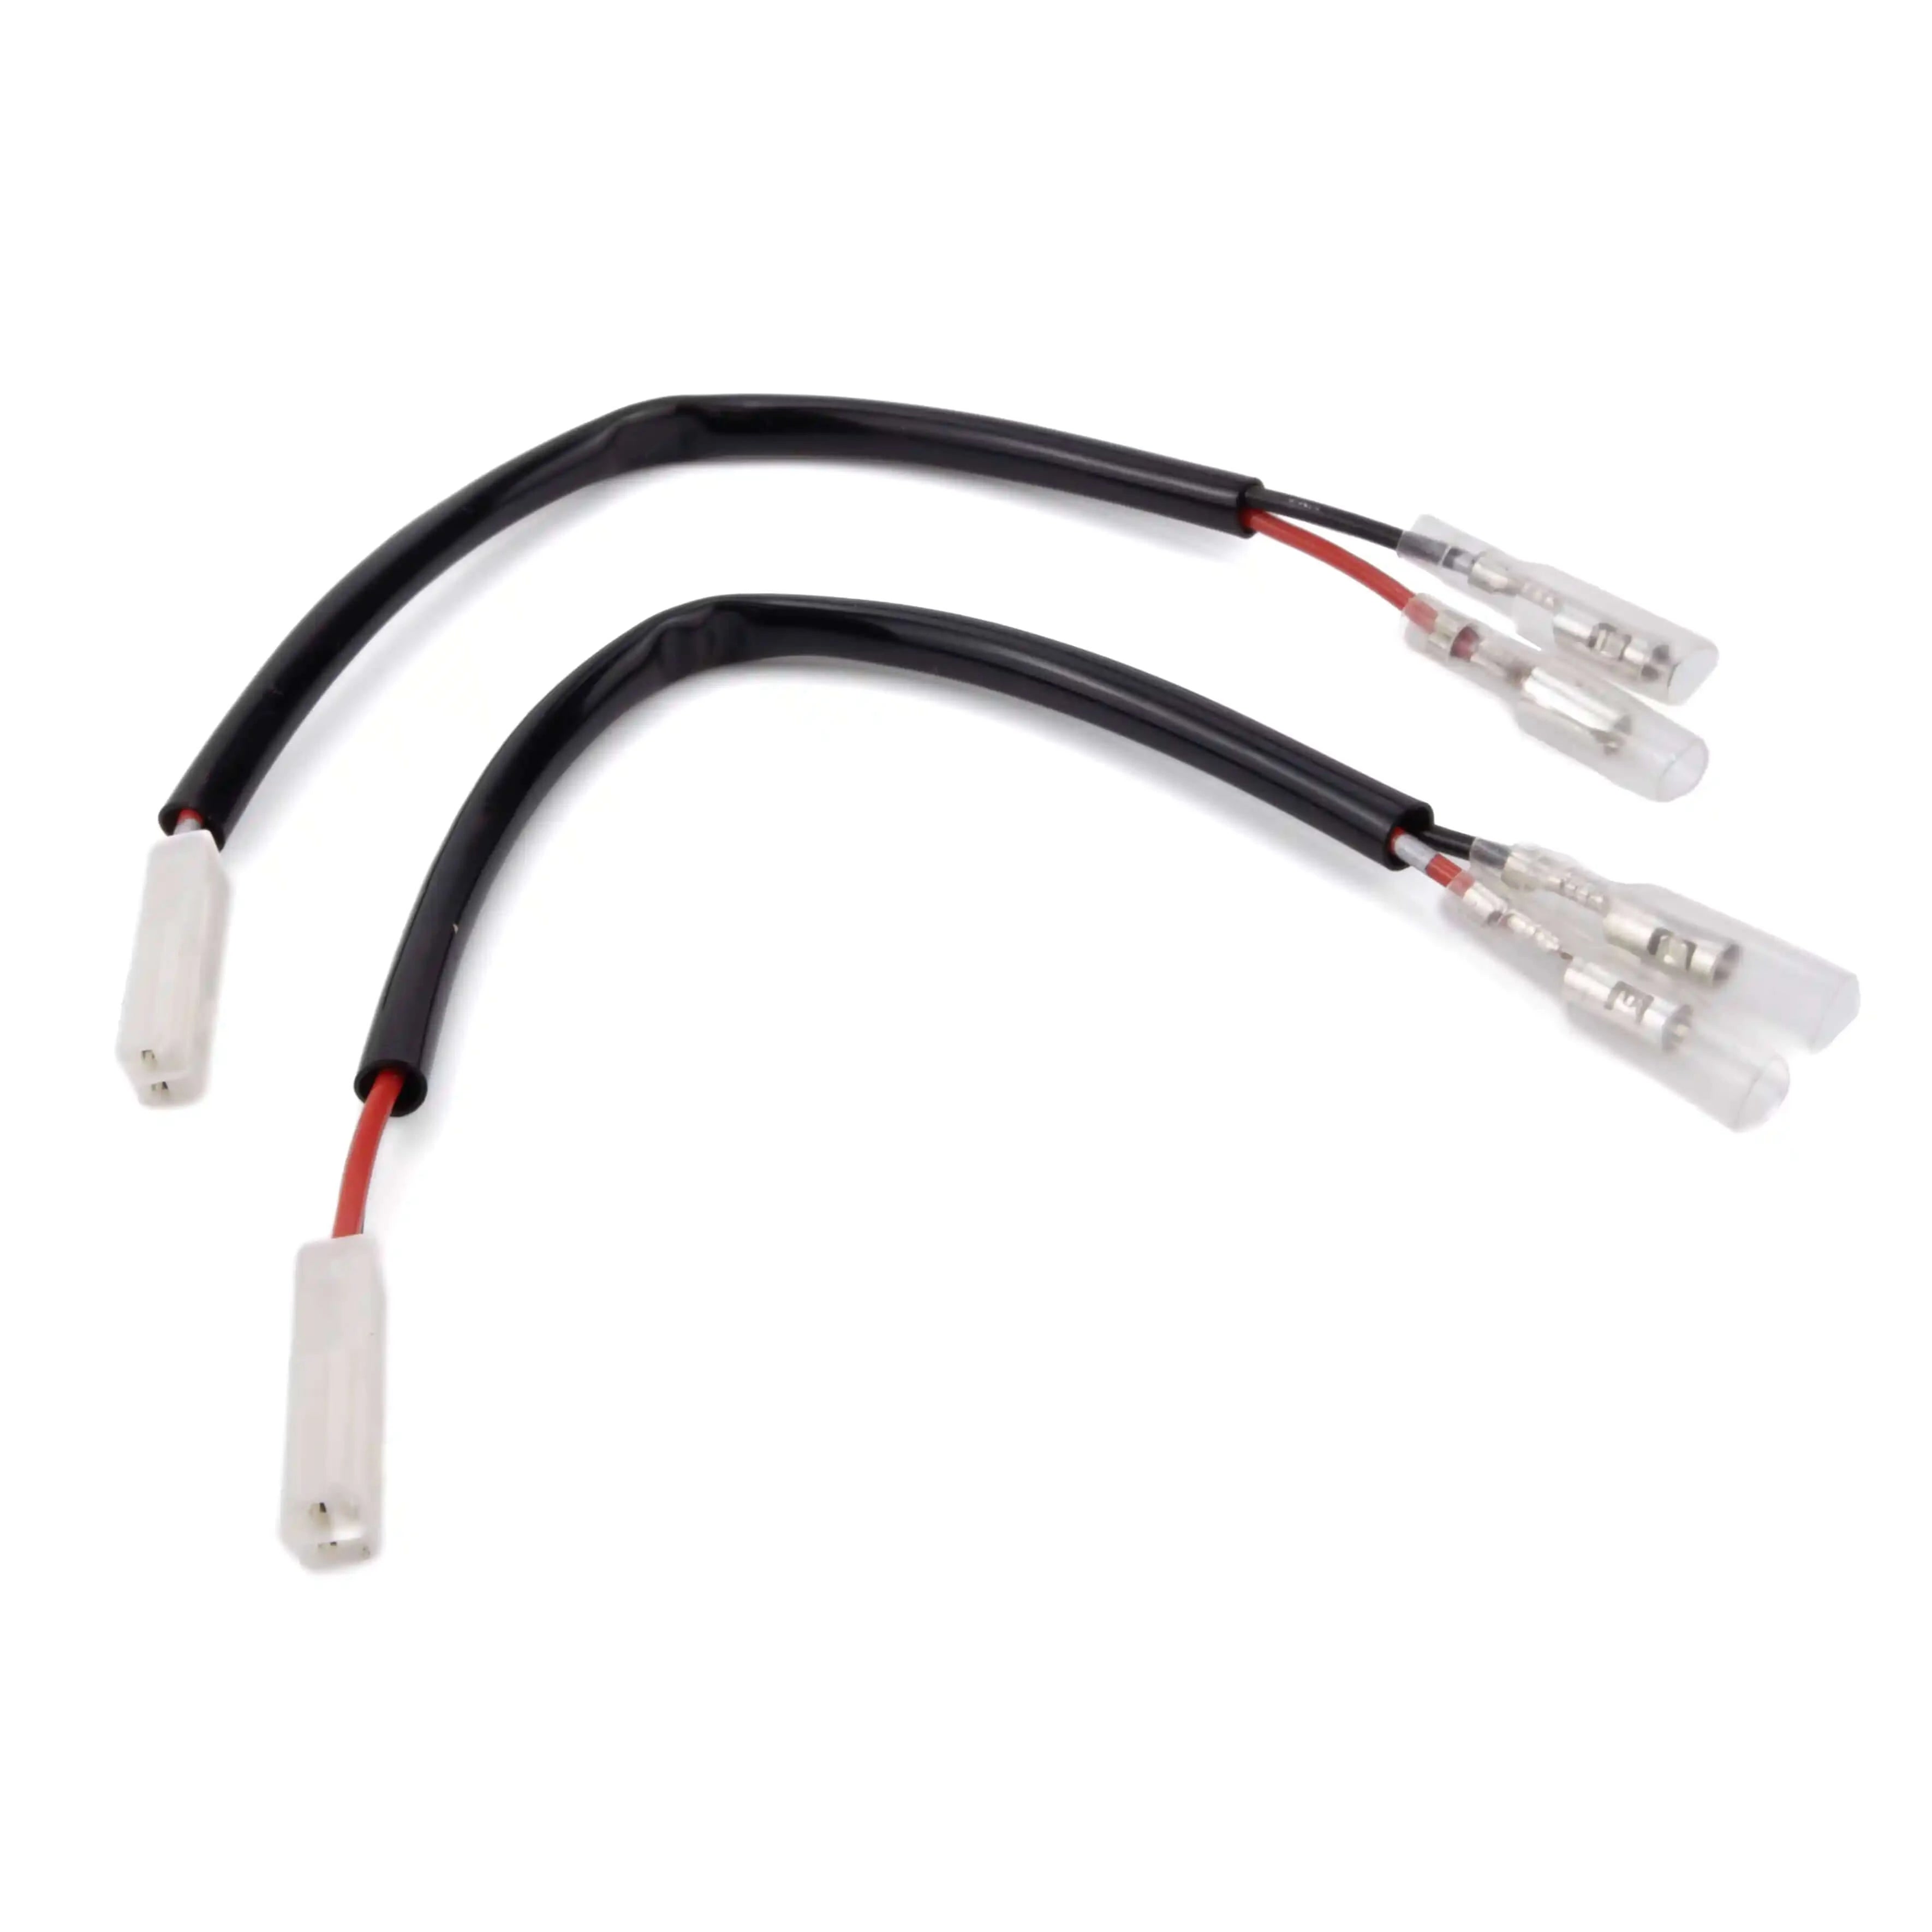 MotoLumino Motorcycle LED Turn Signal Adapter Cables - MLAC04- Honda 2-pin